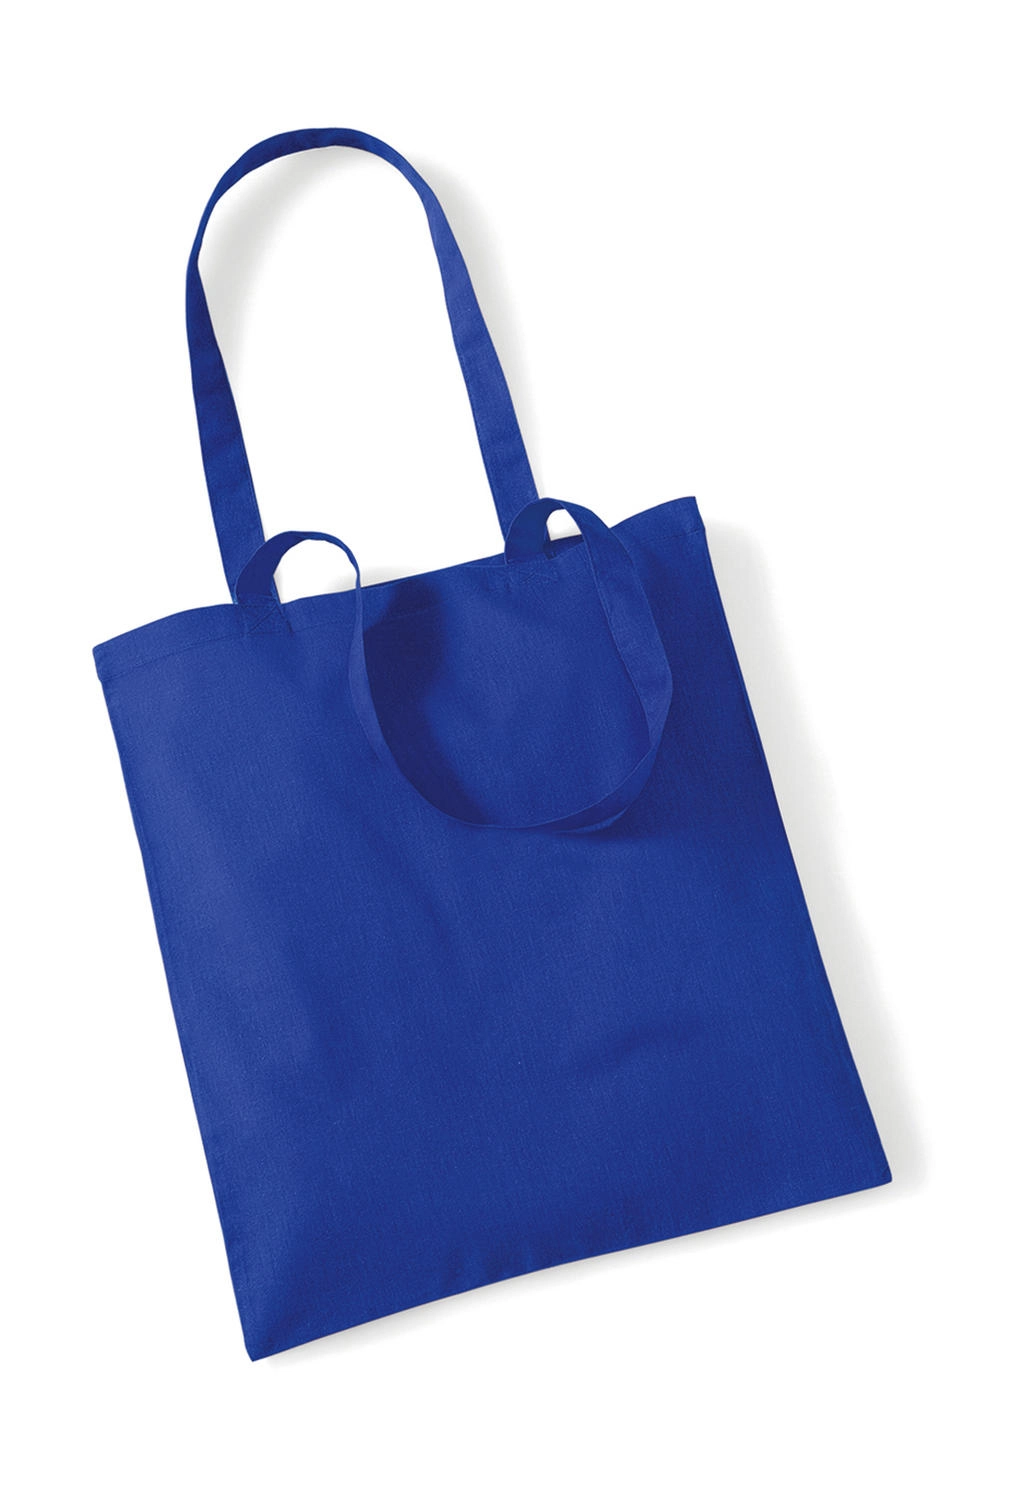 Bag for Life - Long Handles zum Besticken und Bedrucken in der Farbe Bright Royal mit Ihren Logo, Schriftzug oder Motiv.